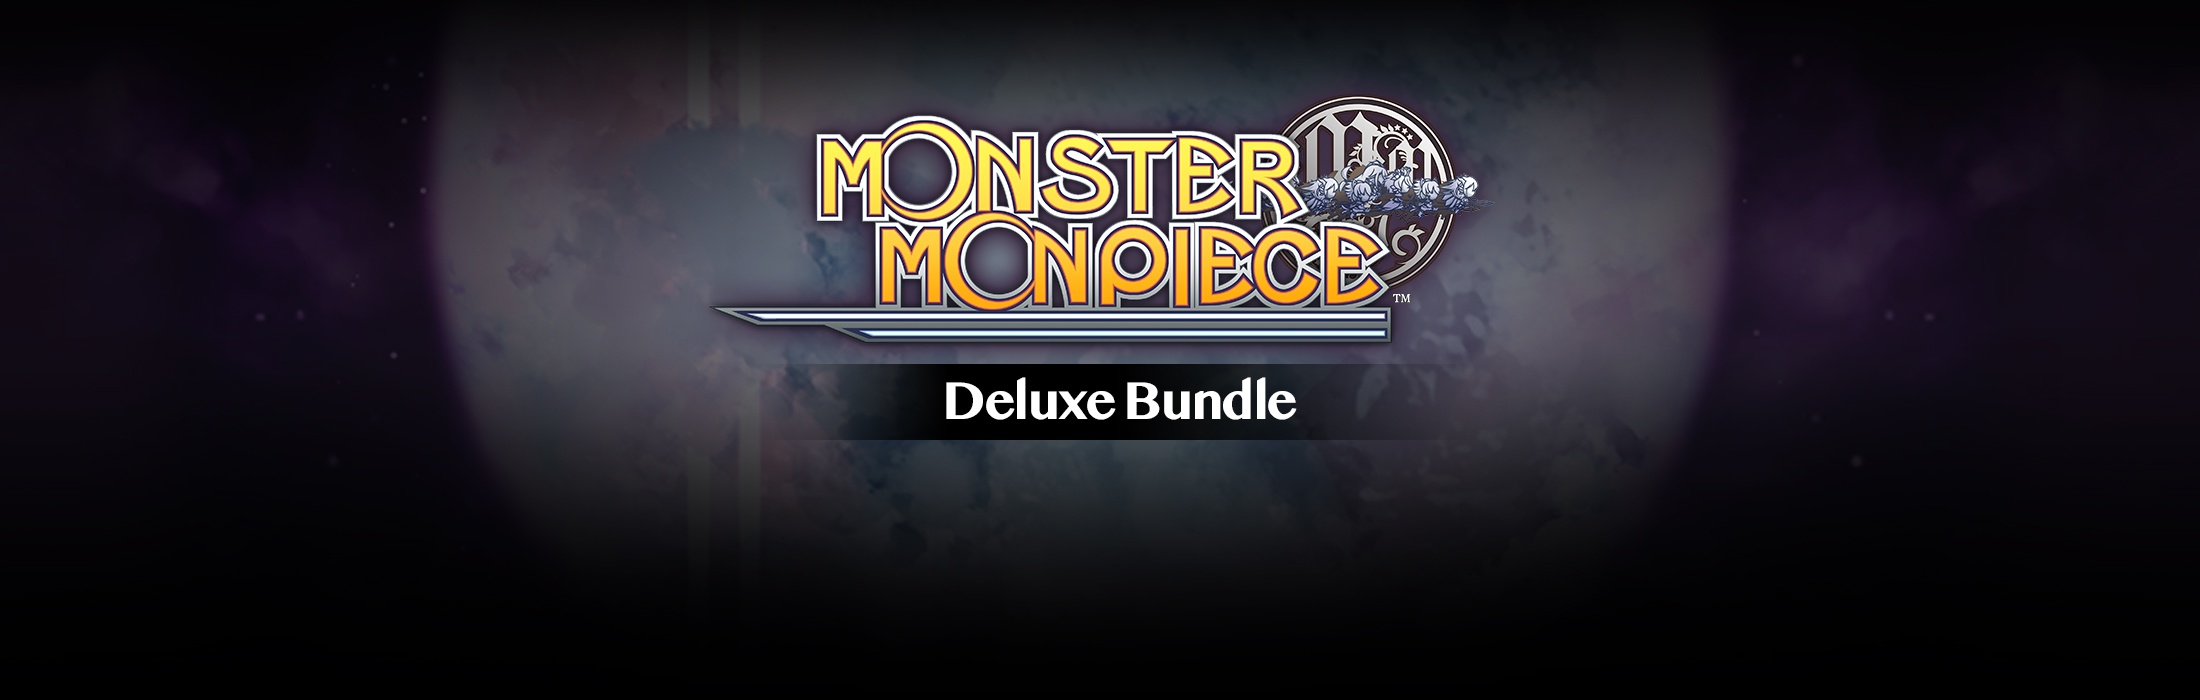 Monster Monpiece Deluxe Bundle